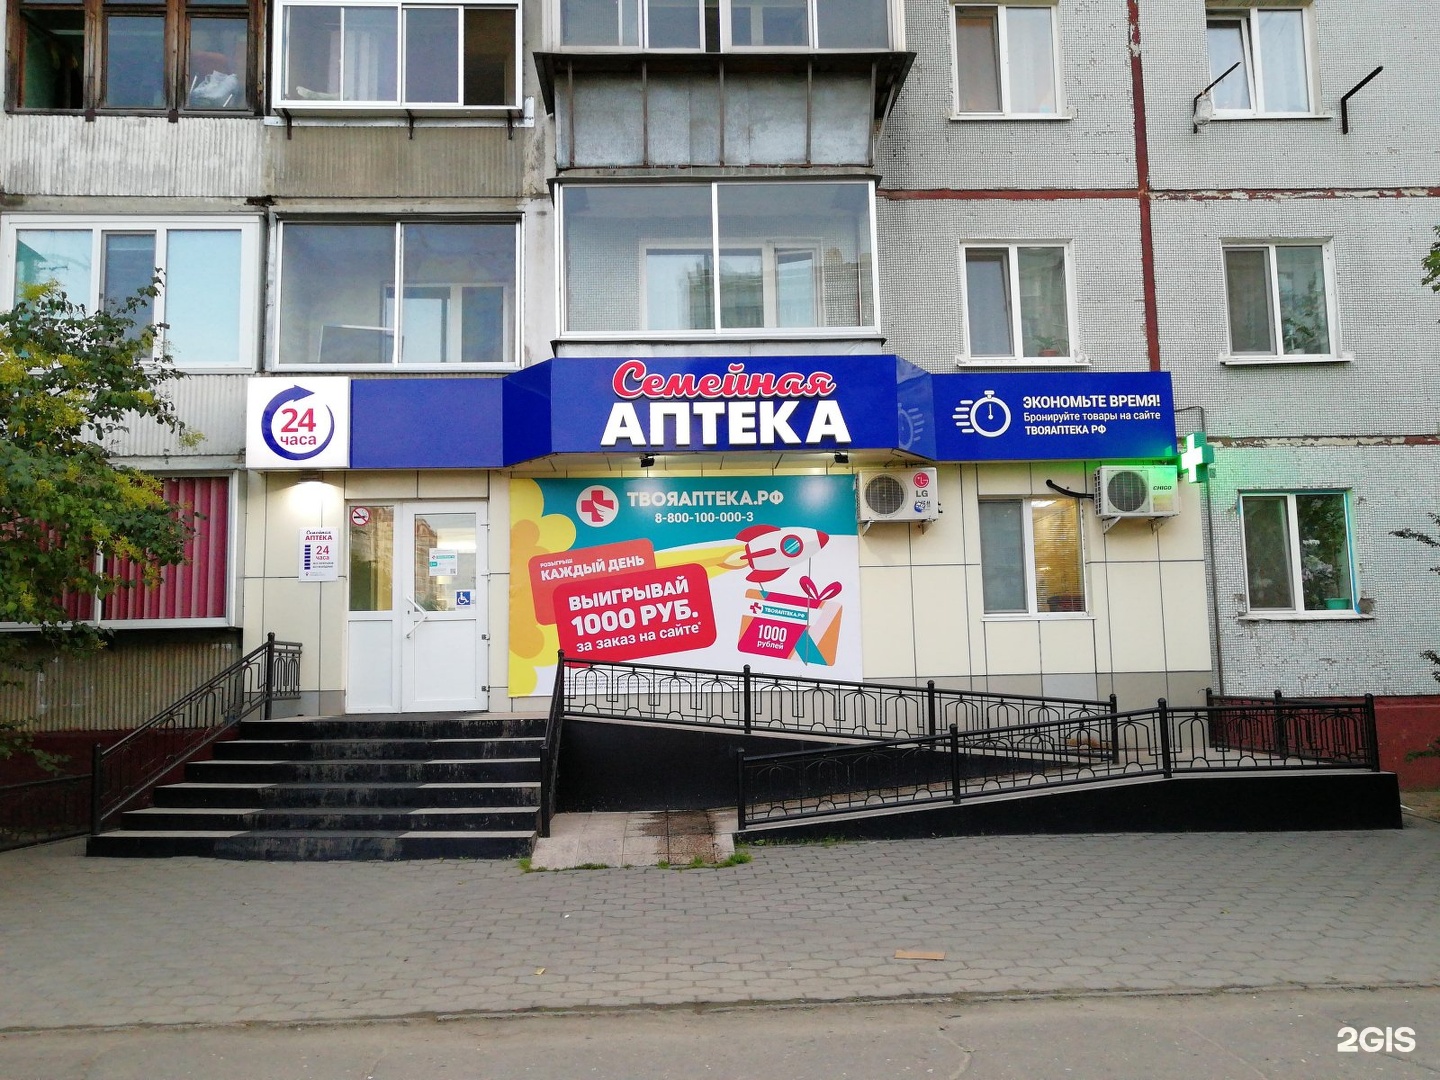 Единая Справочная Аптек Новокузнецка